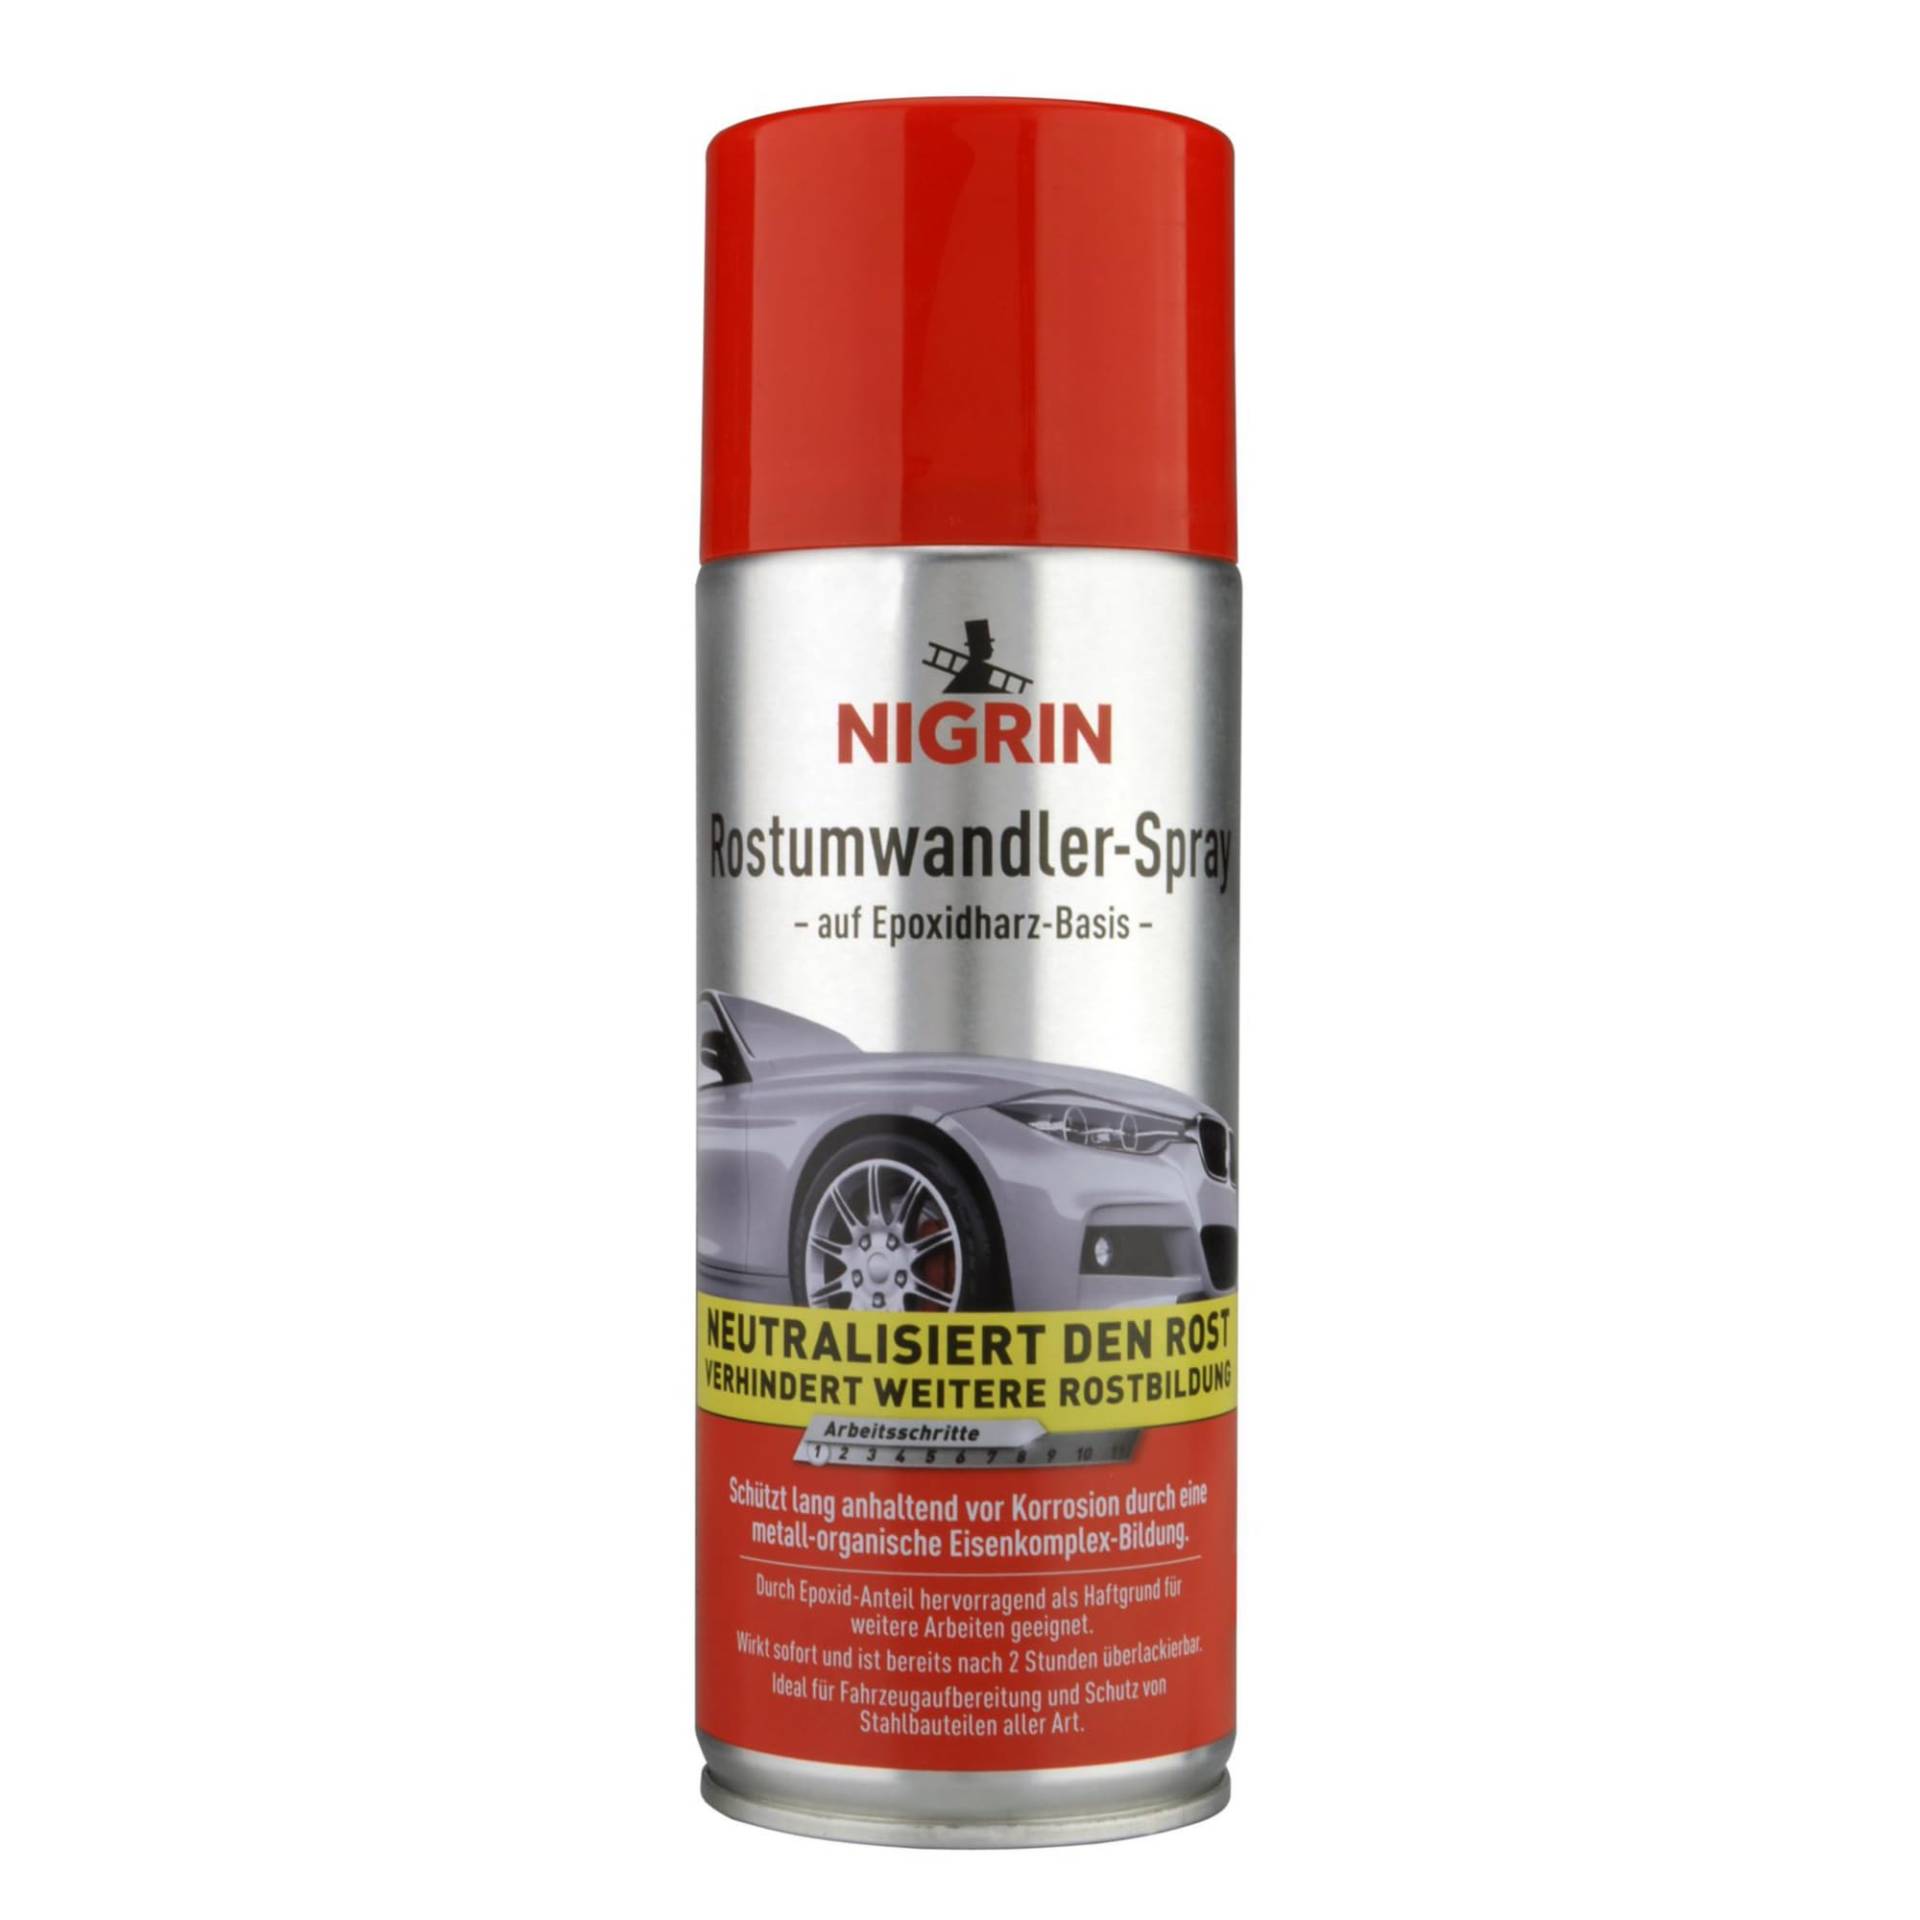 NIGRIN Rostumwandler Spray, 400 ml, Korrosionsschutz Lack mit rostumwandelnden Eigenschaften, langanhaltender Korrosionsschutz von NIGRIN